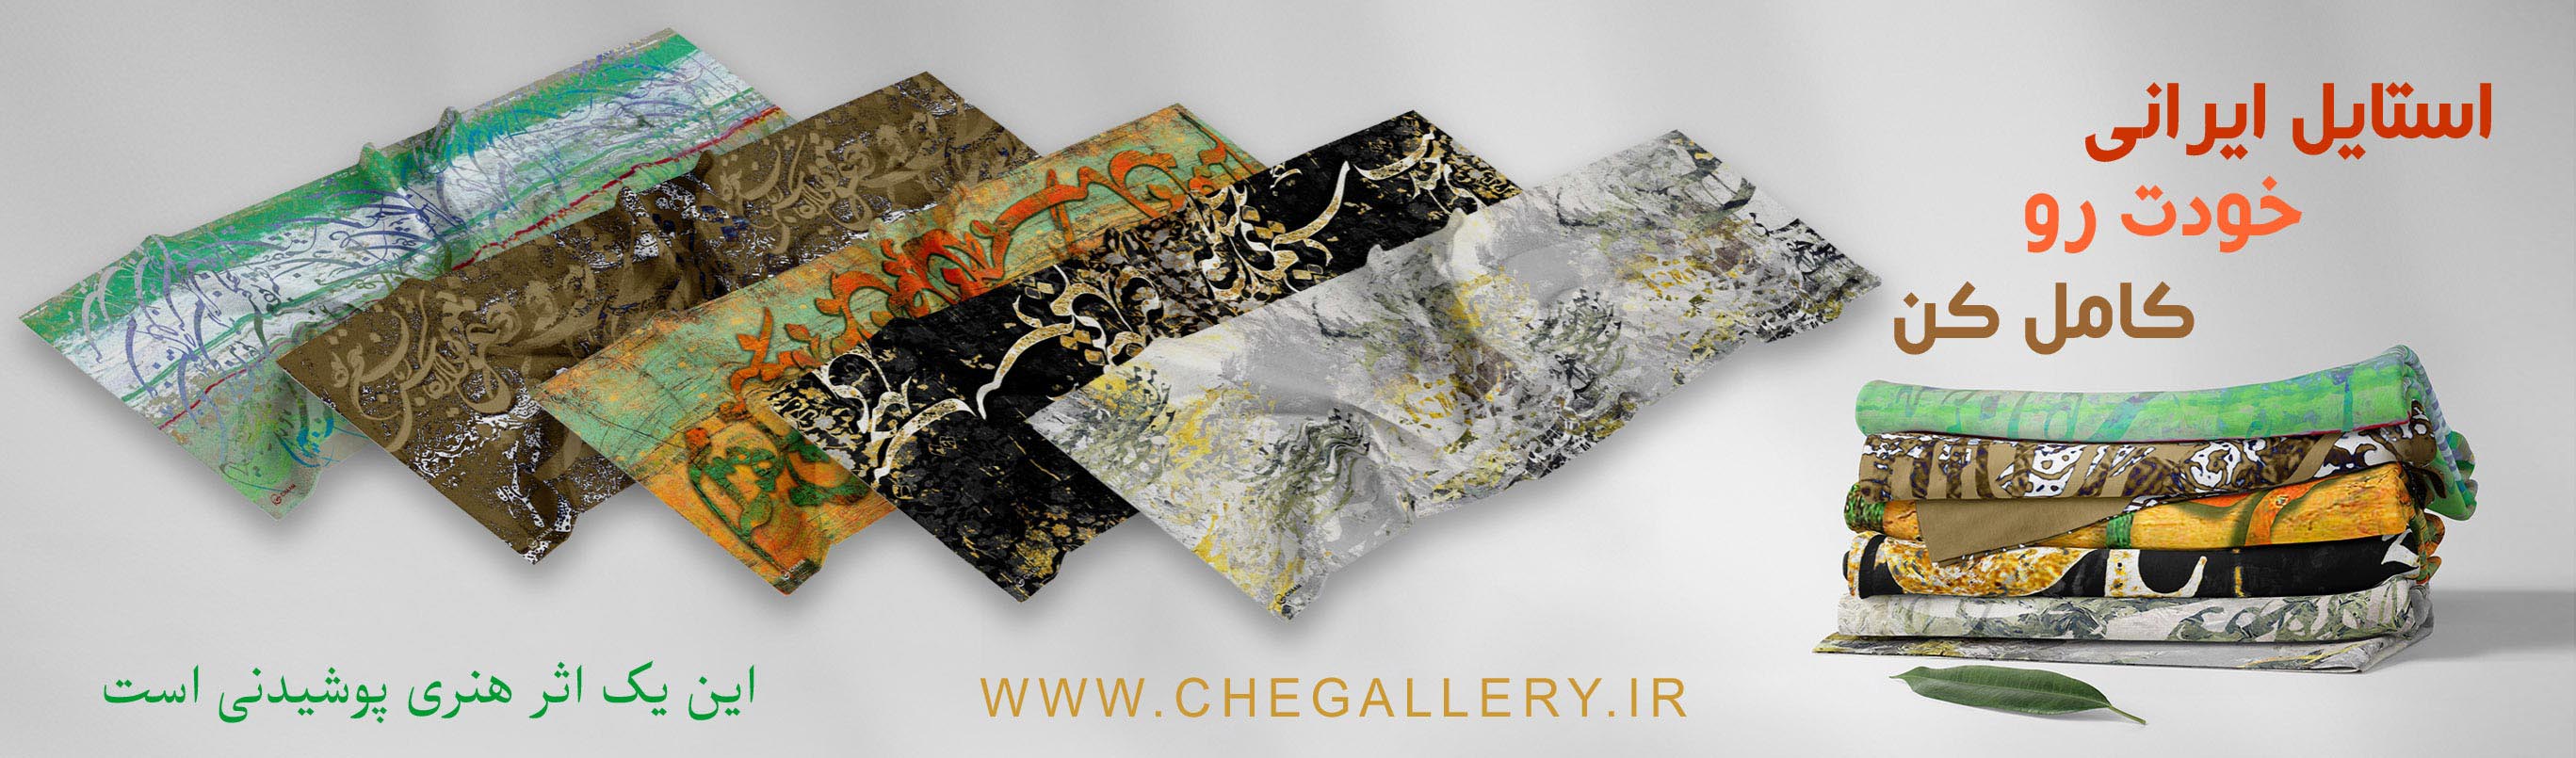 شال و روسری هنری چام استایل ایرانی خودت رو  کامل کن این یک اثر هنری پوشیدنی است